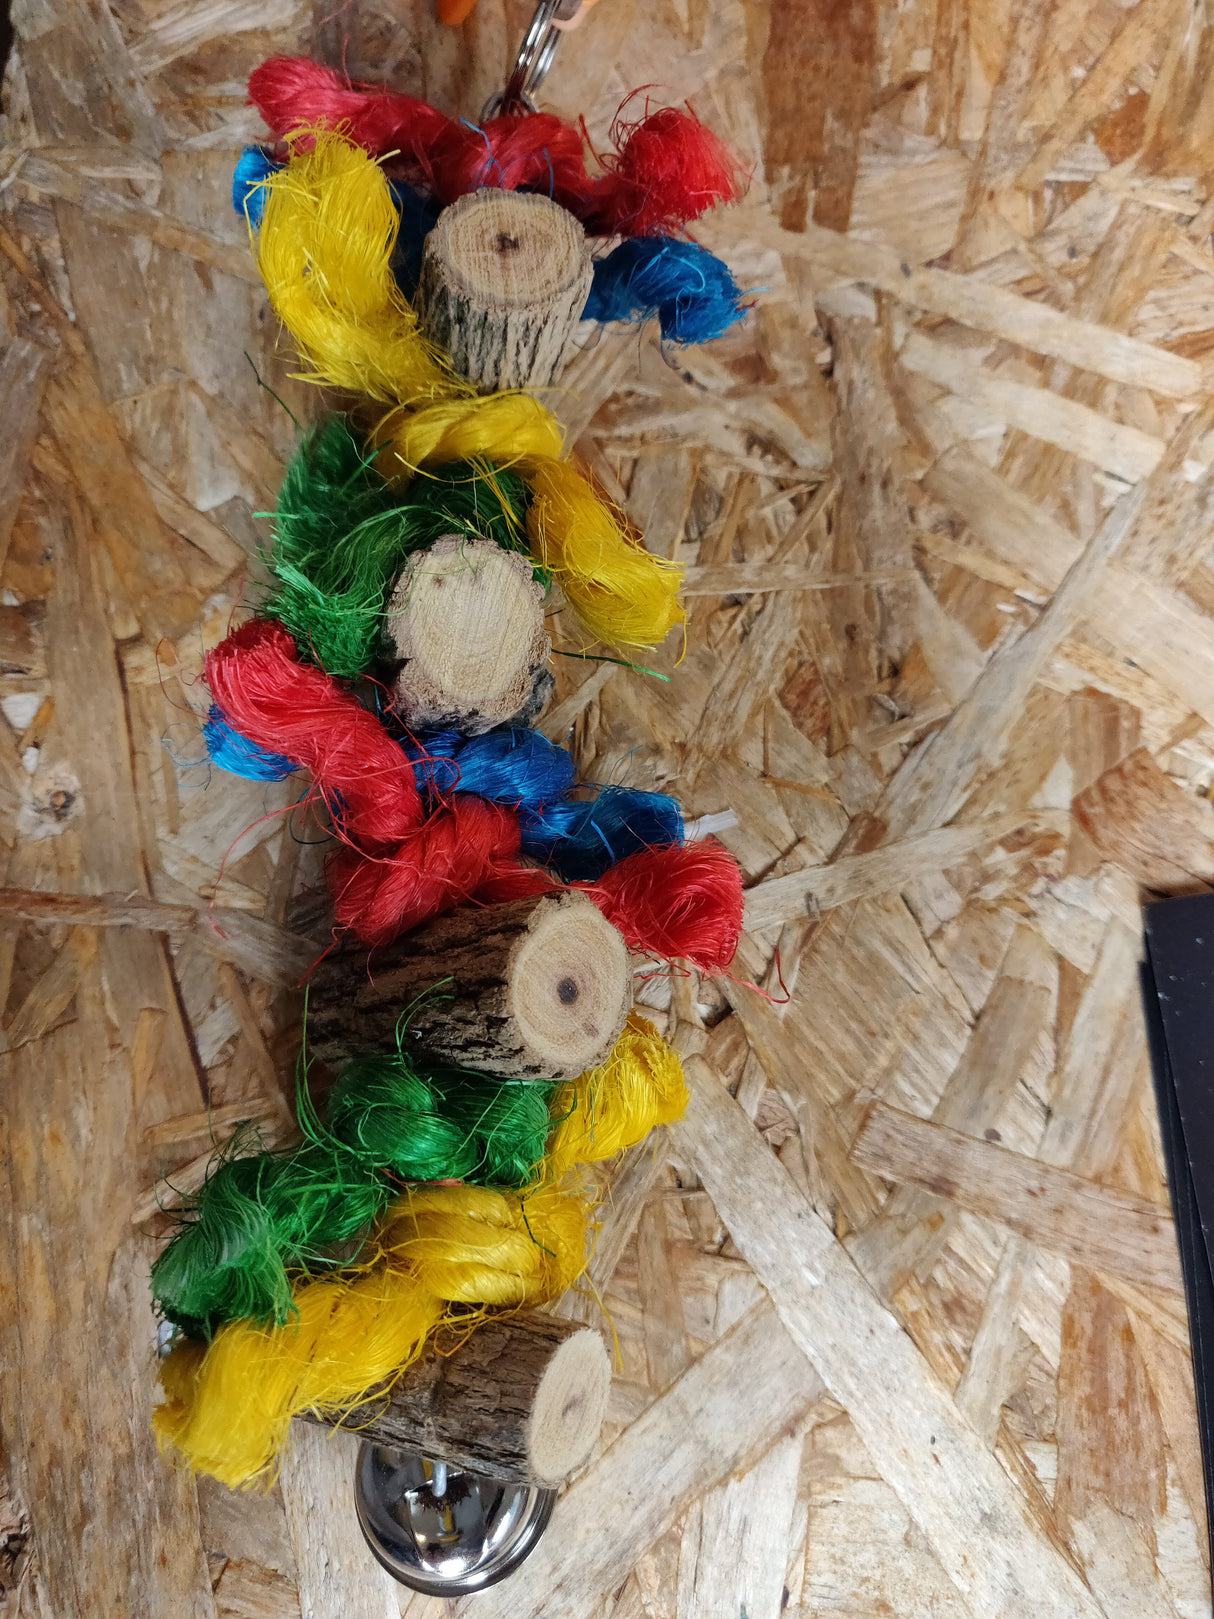 Papegøje/parakit legetøj, farverig og med masser af bide aktivitet